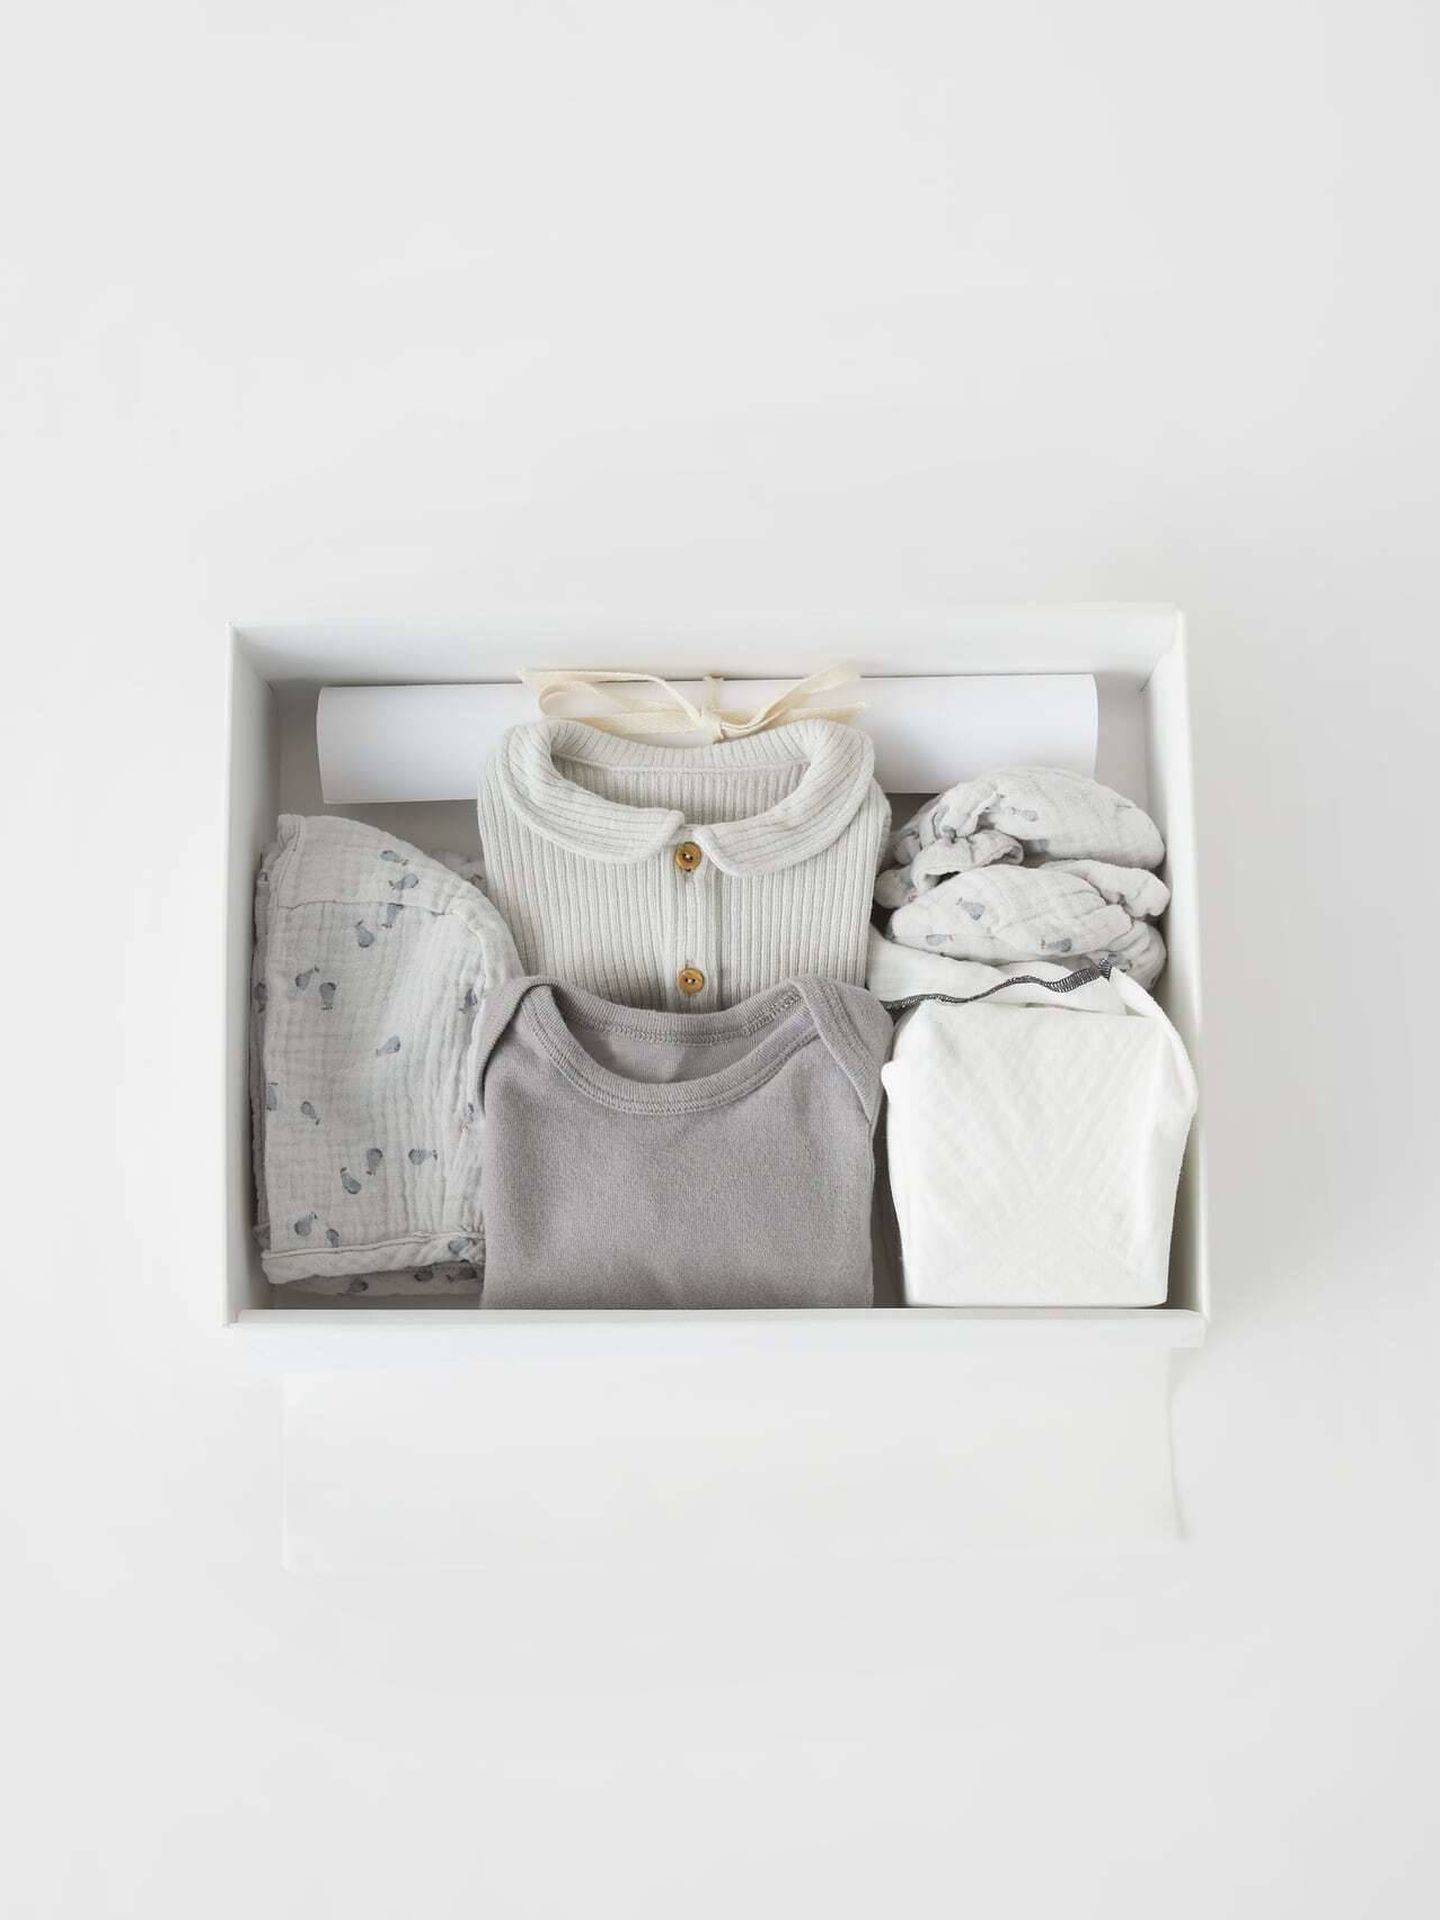 La nueva colección de regalos para recién nacidos de Zara. (Cortesía)